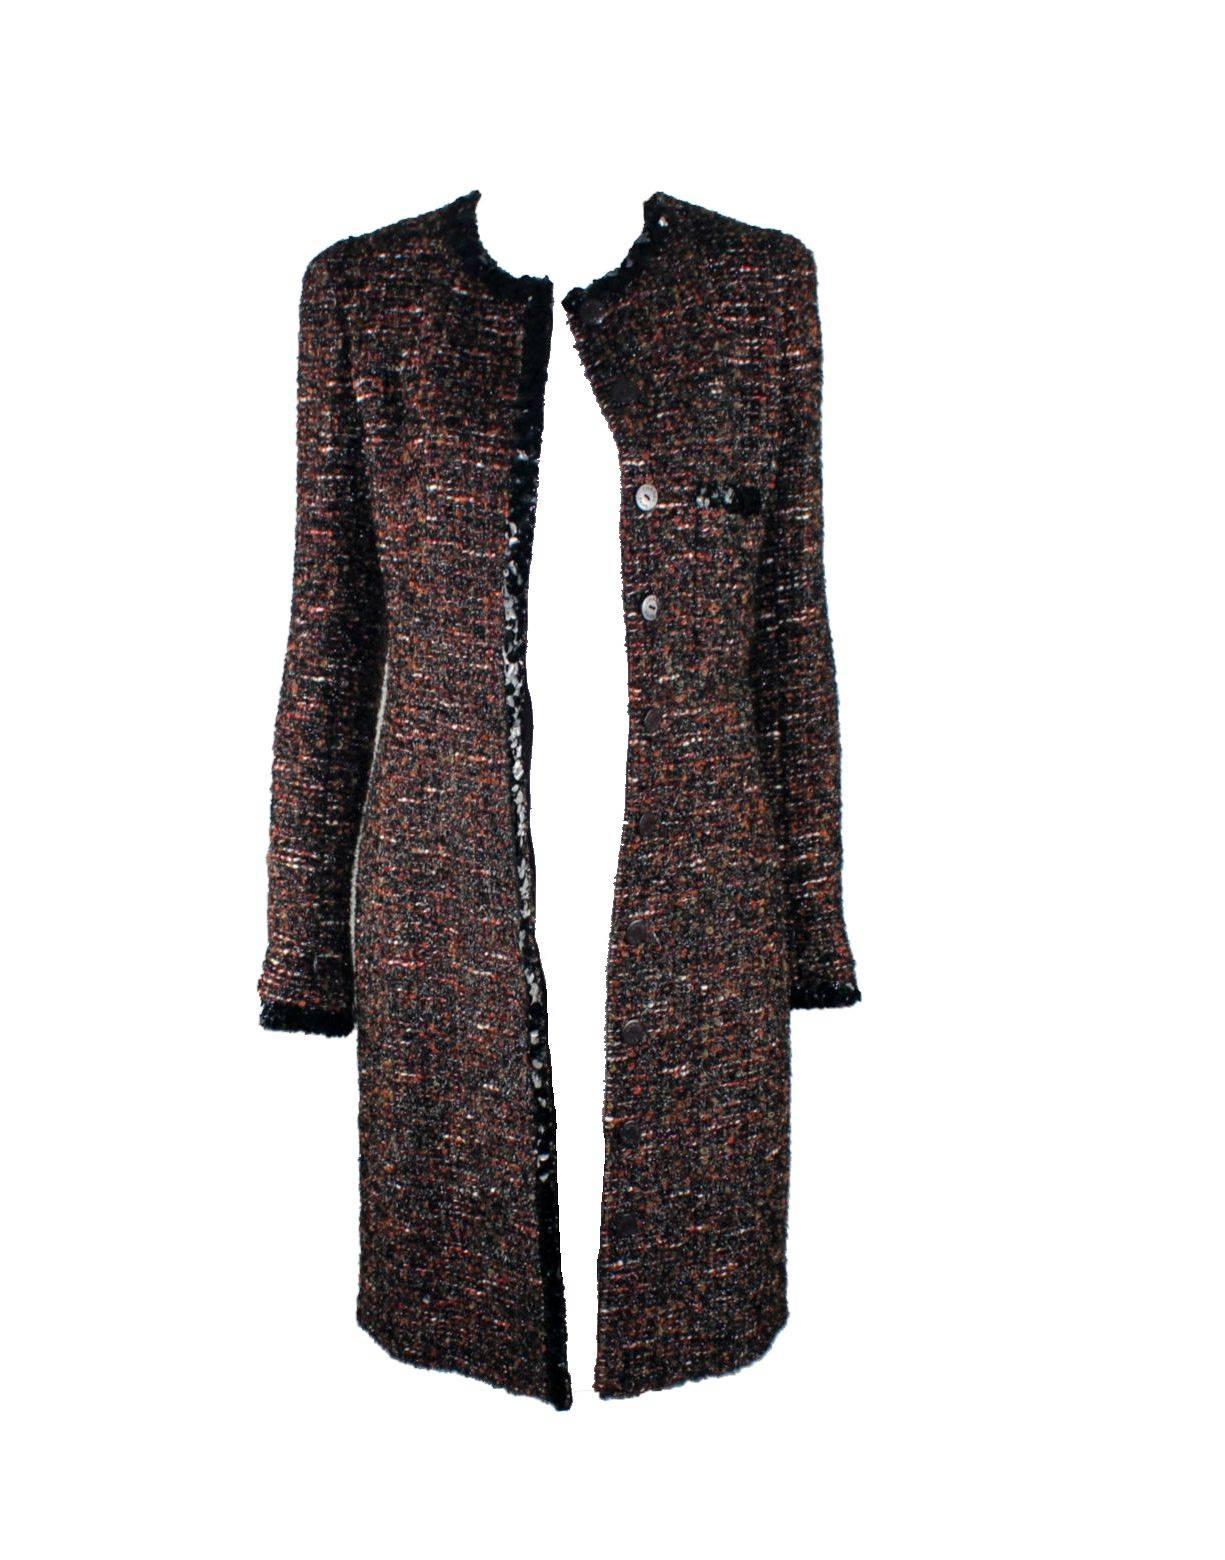 Women's UNWORN Chanel Metallic Lesage Fantasy Tweed Sequin Trimmed Coat 